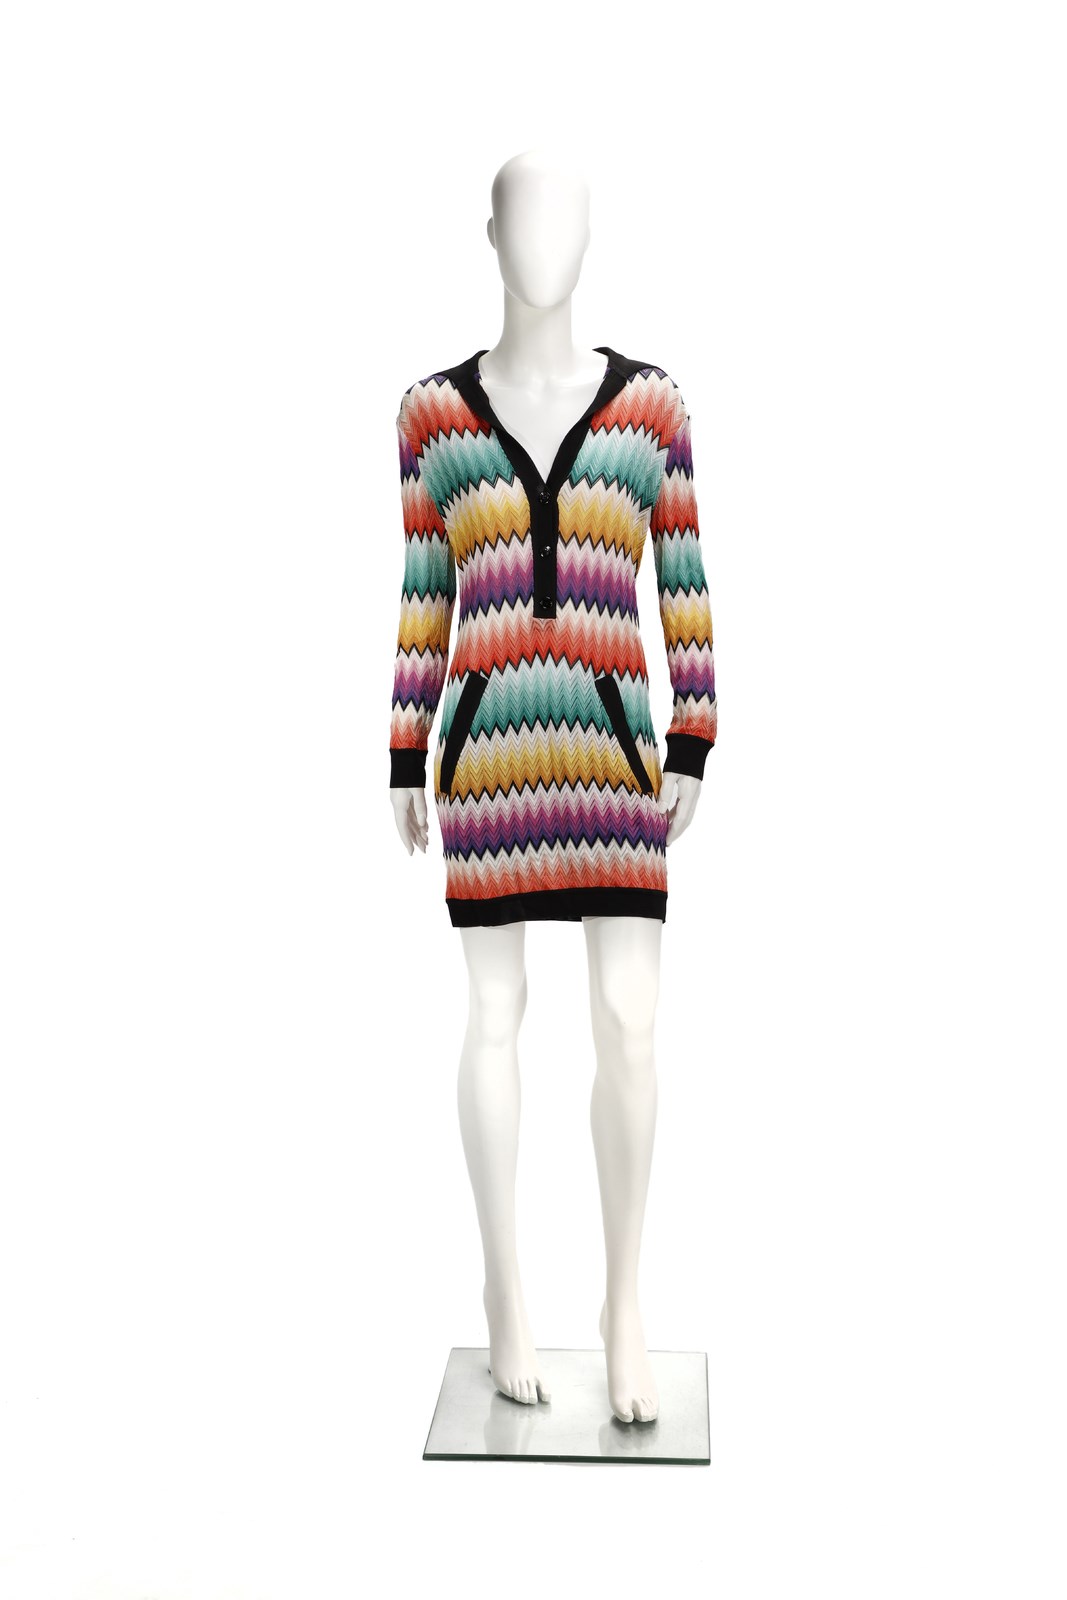 Multicolored knit tunic. (Missoni )